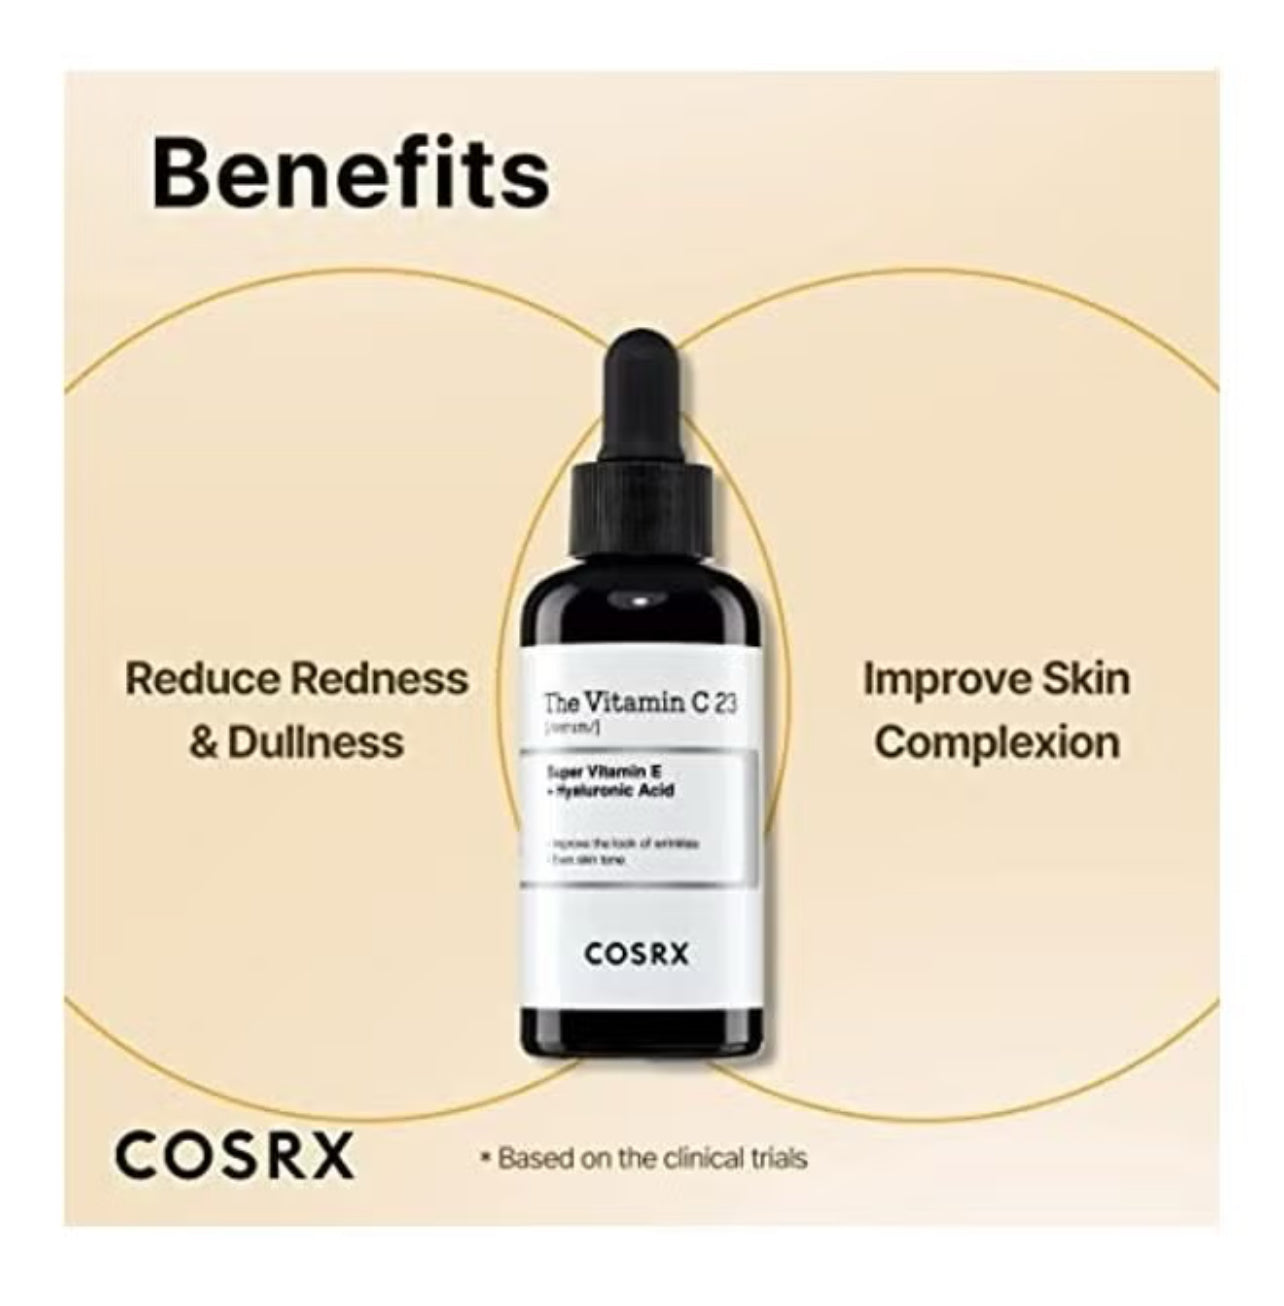 Cosrx The Vitamin C 23 Serum 20gr – Brightening Vitamin C Serum